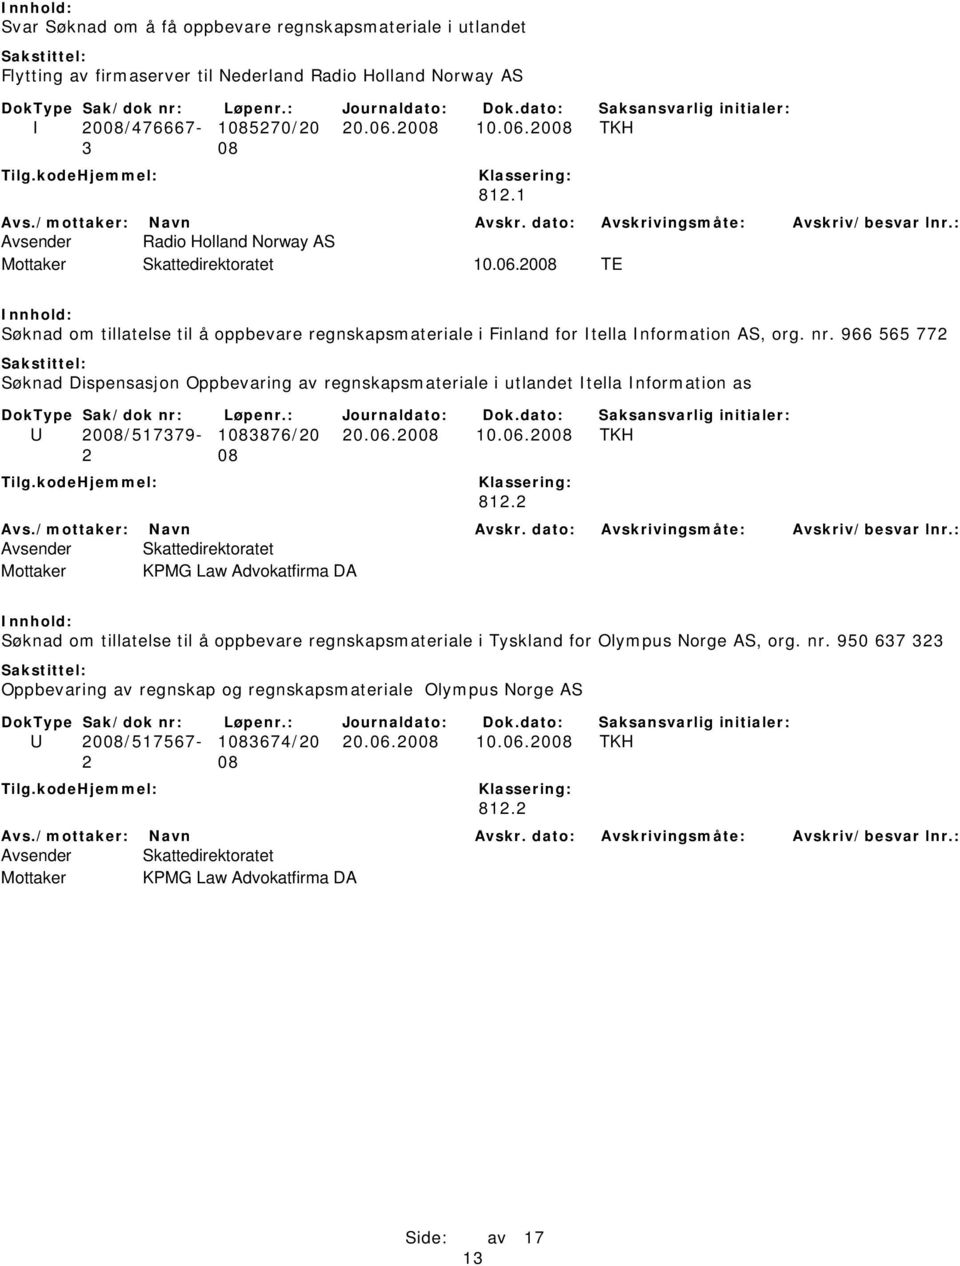 966 565 772 Søknad Dispensasjon Oppbevaring av regnskapsmateriale i utlandet Itella Information as U 2008/517379-1083876/20 20.06.2008 10.06.2008 TKH 812.